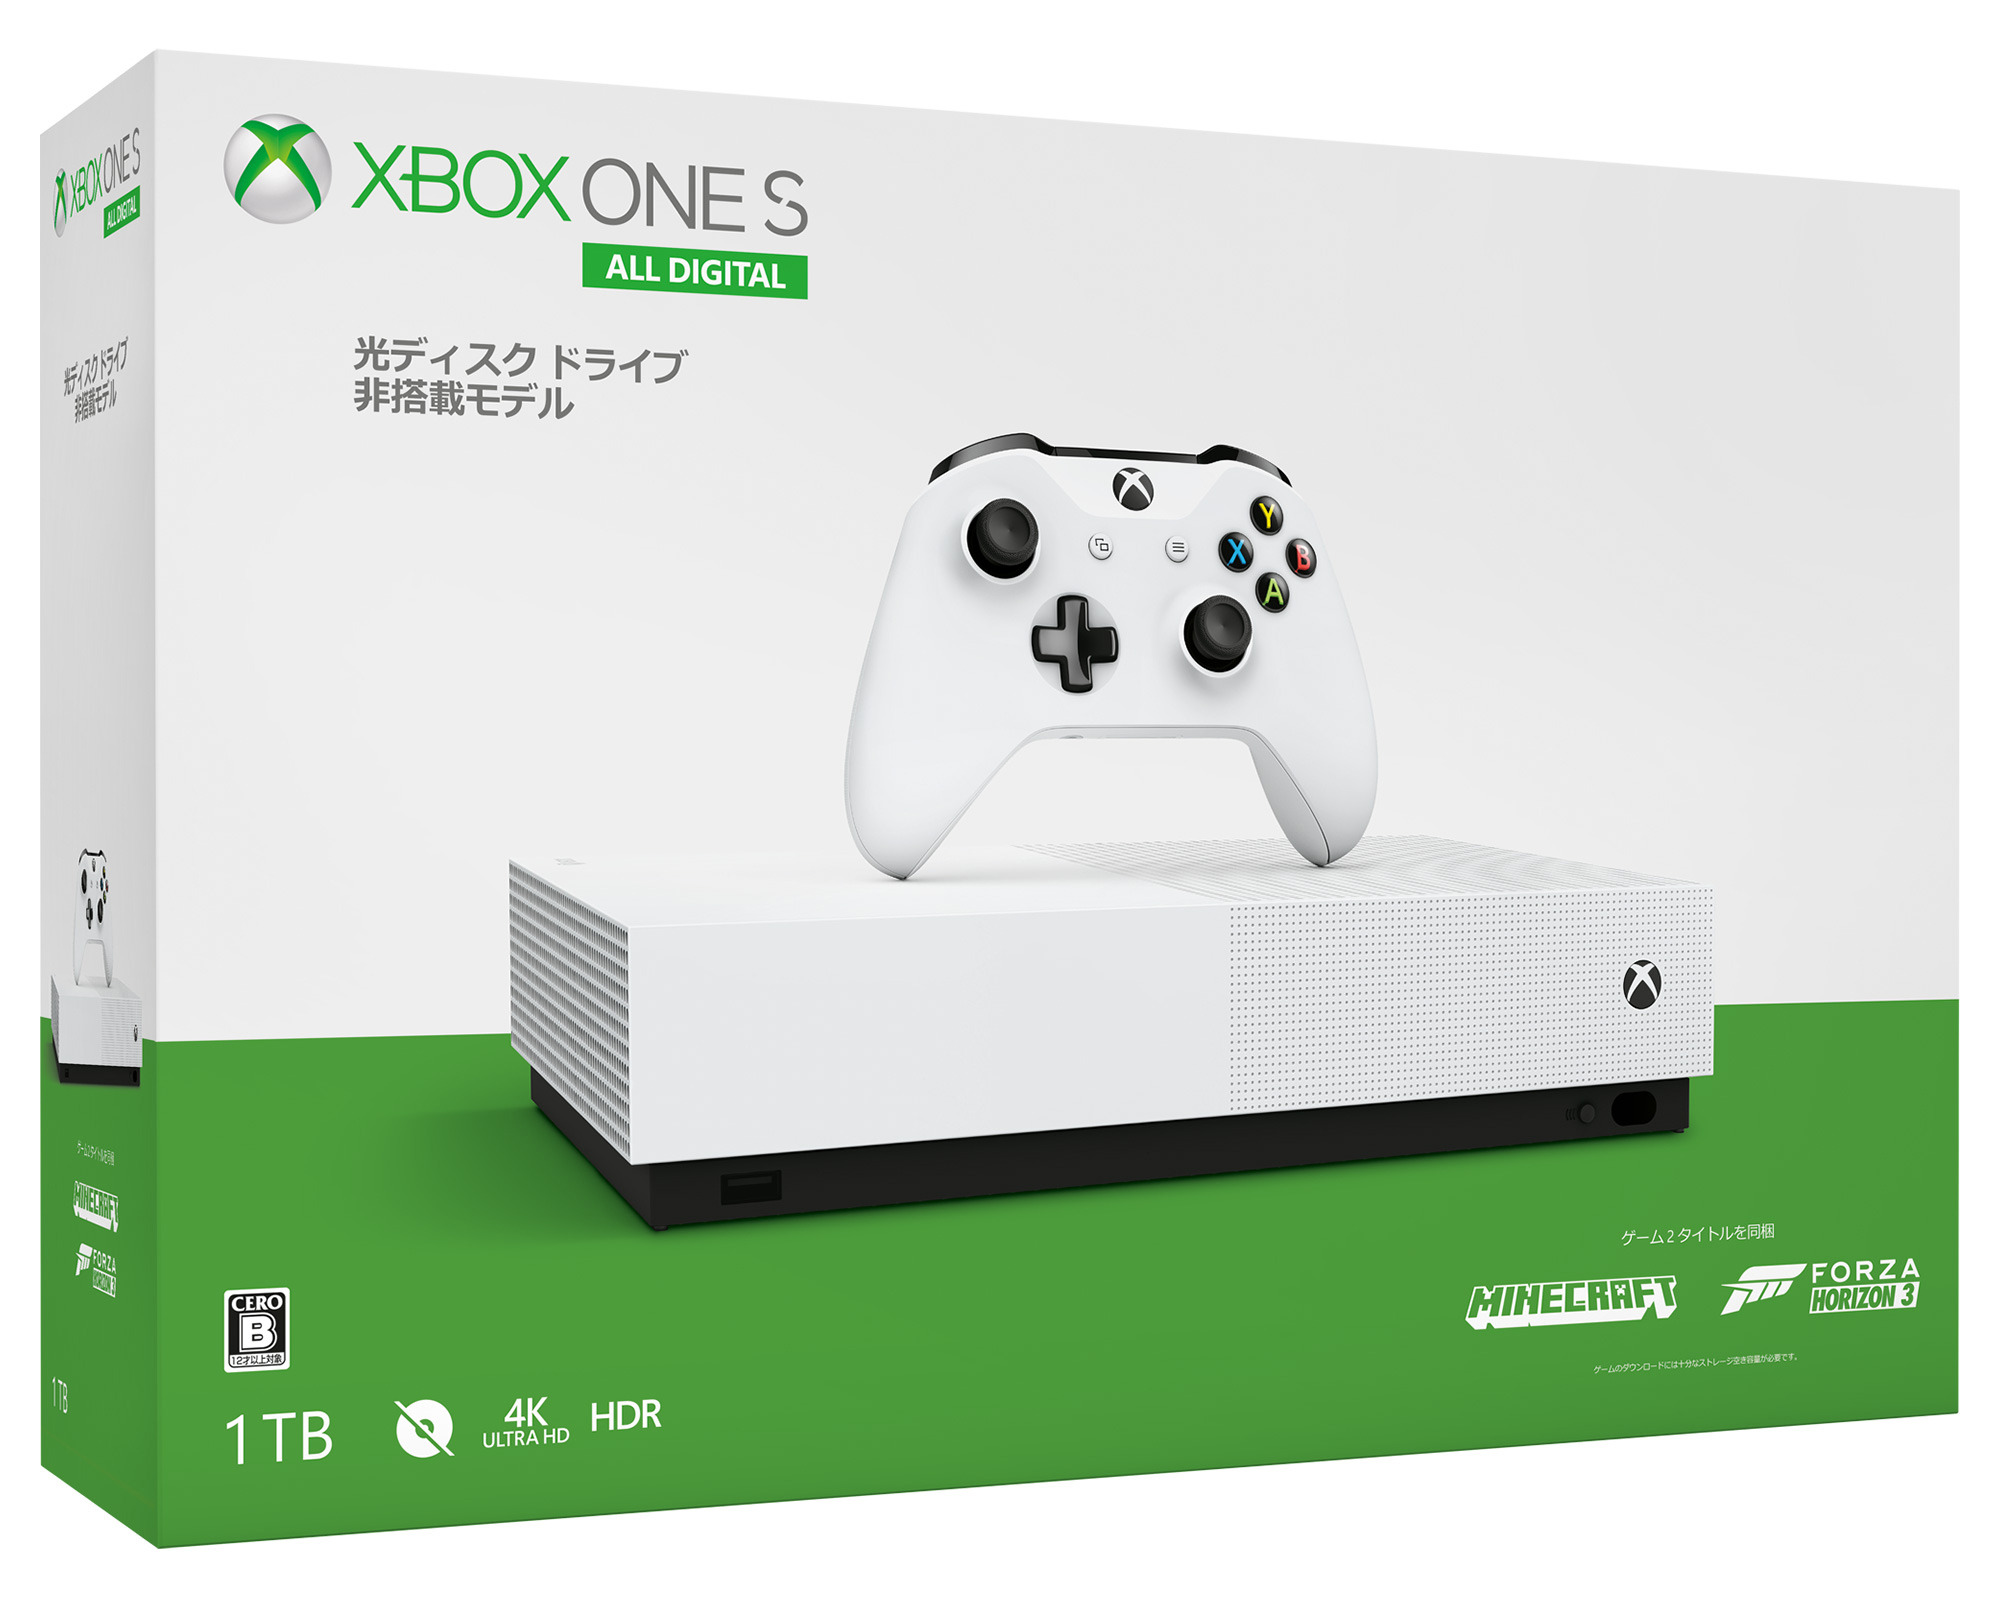 ディスクレスの新モデル Xbox One S All Digital Edition 国内向けにも発表 Game Spark 国内 海外ゲーム情報サイト